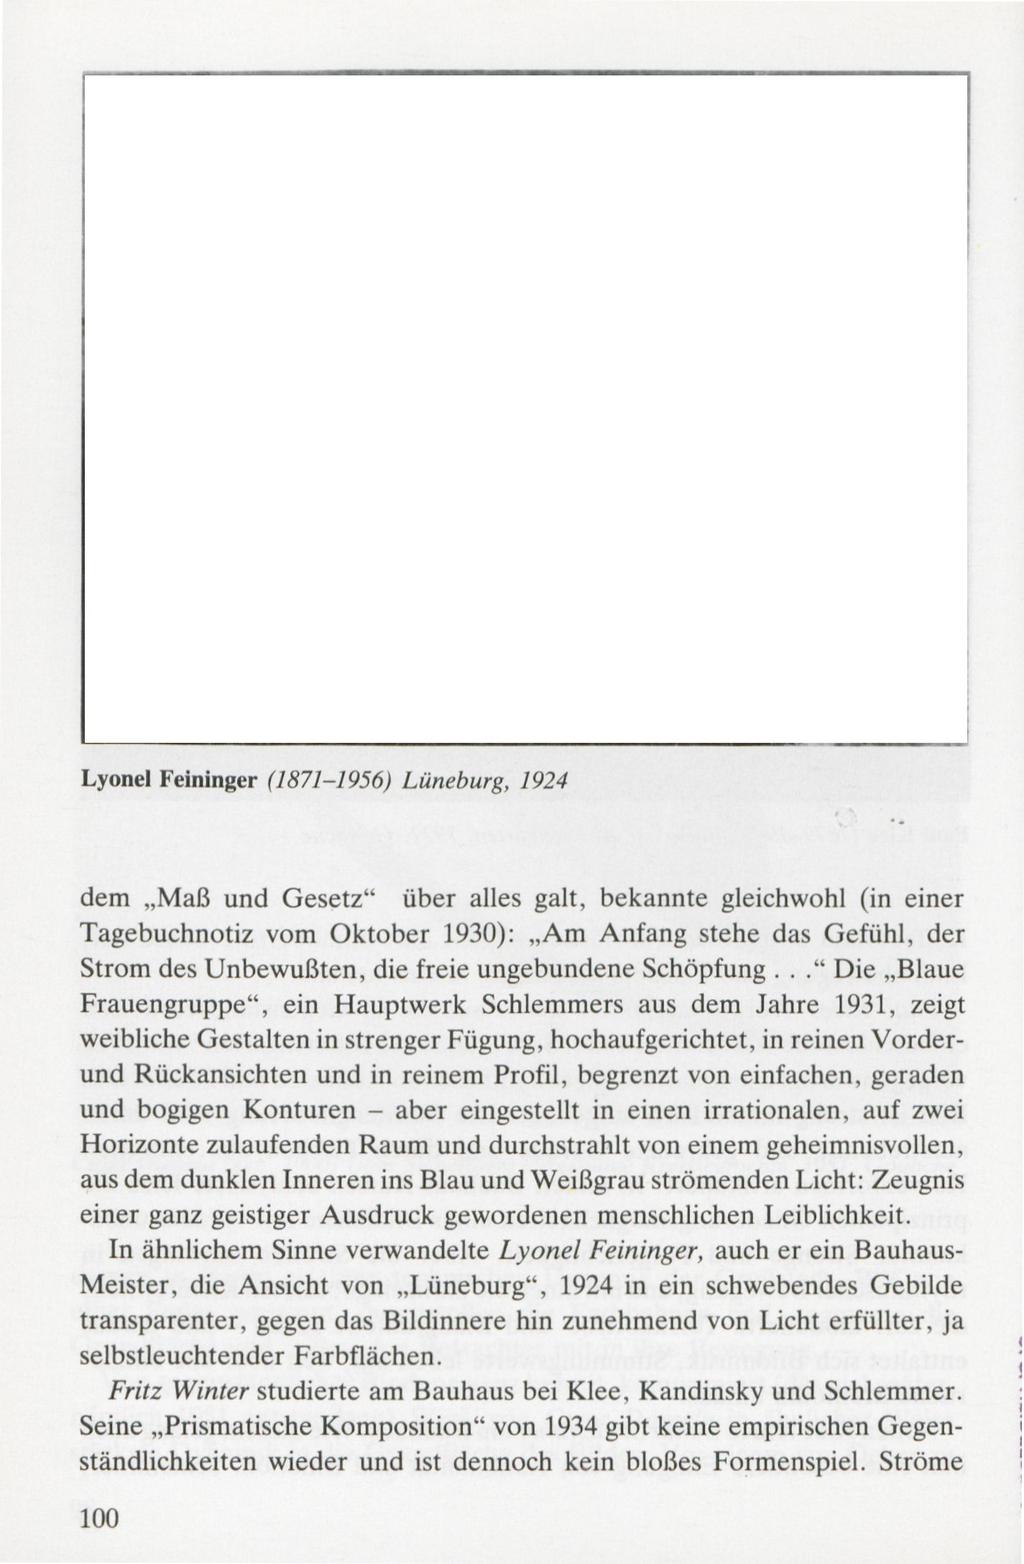 Lyonei Feininger (1871-1956) Lüneburg, 1924 dem Maß und Gesetz über alles galt, bekannte gleichwohl (in einer Tagebuchnotiz vom Oktober 1930): Am Anfang stehe das Gefühl, der Strom des Unbewußten,